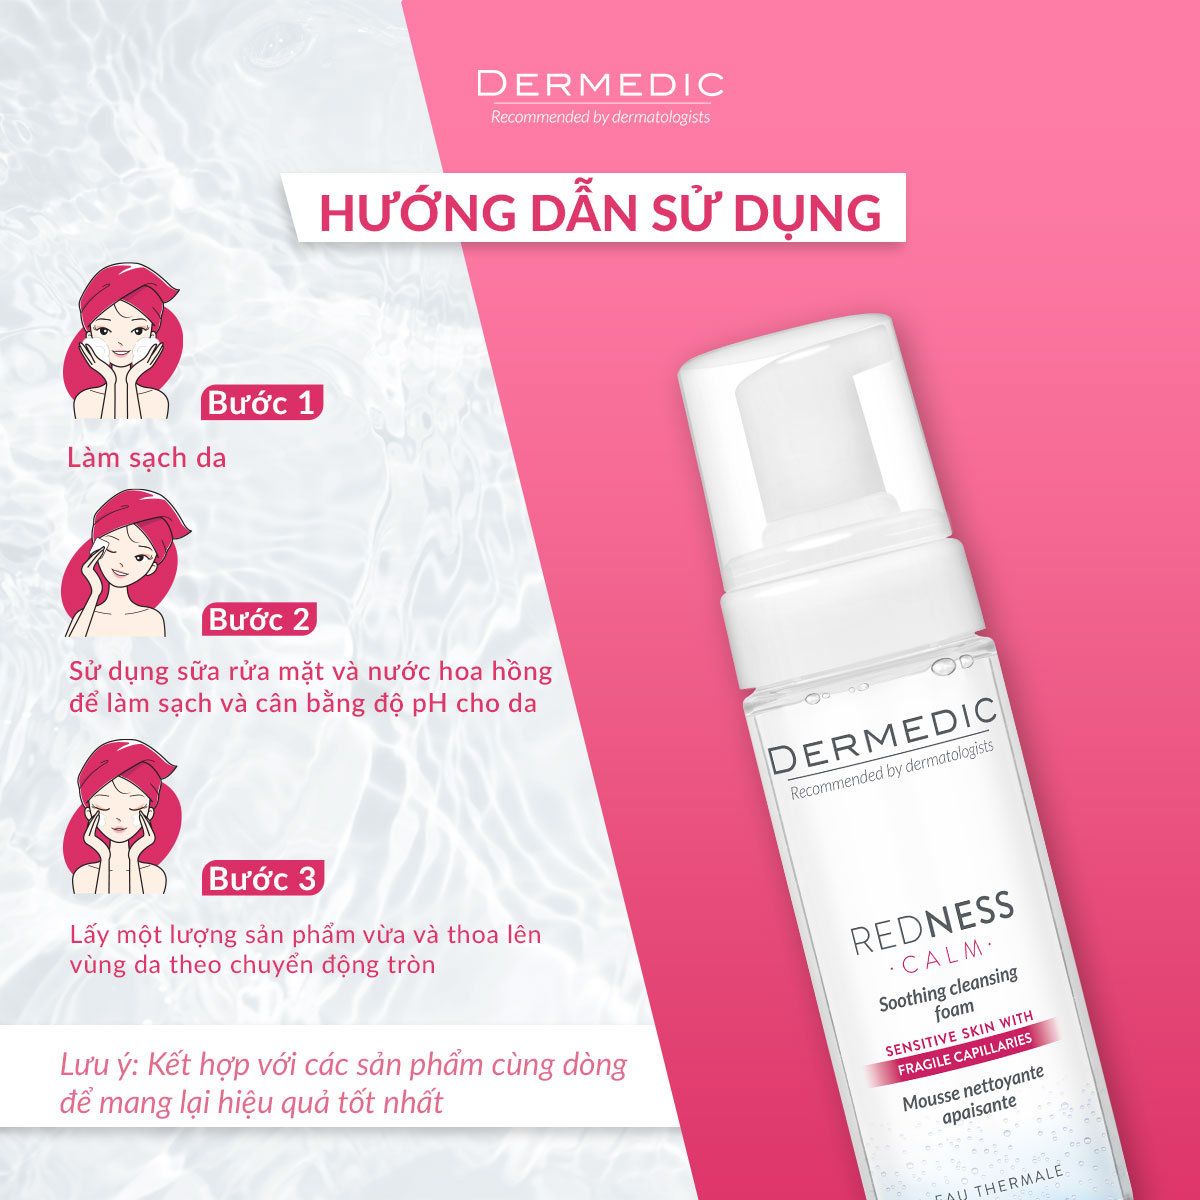  Bọt rửa mặt dành cho da nhạy cảm dễ kích ứng Dermedic Redness Calm Soothing cleansing foam 170ml 